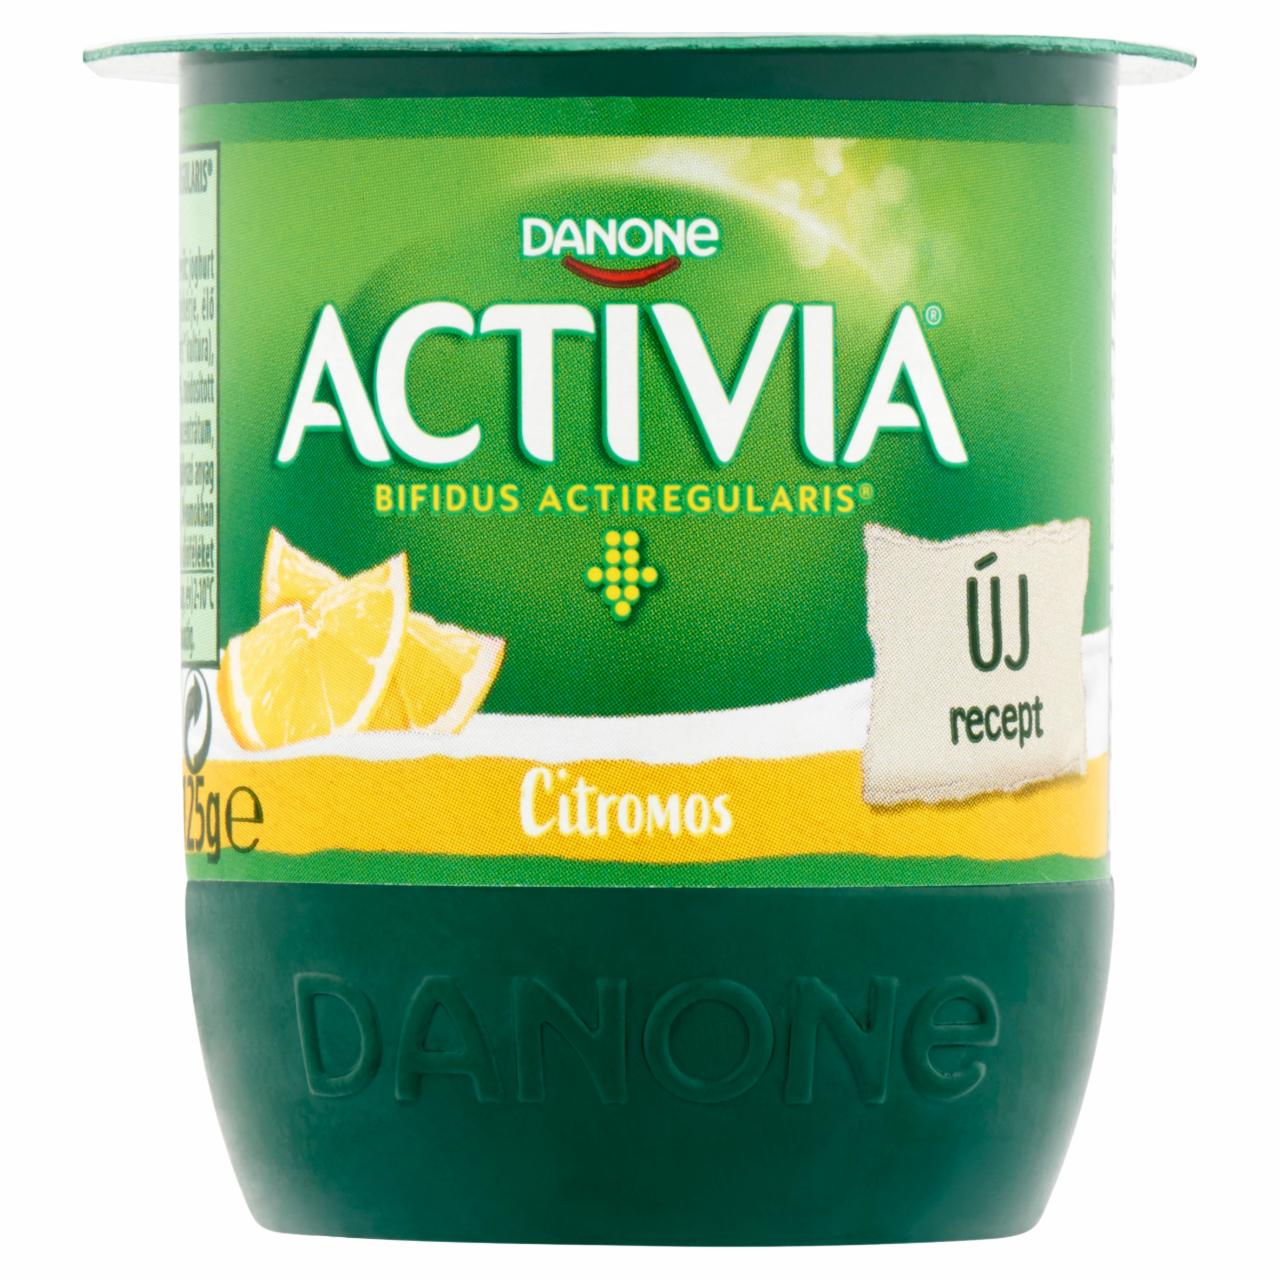 Képek - Danone Activia élőflórás, zsírszegény citromos joghurt 125 g